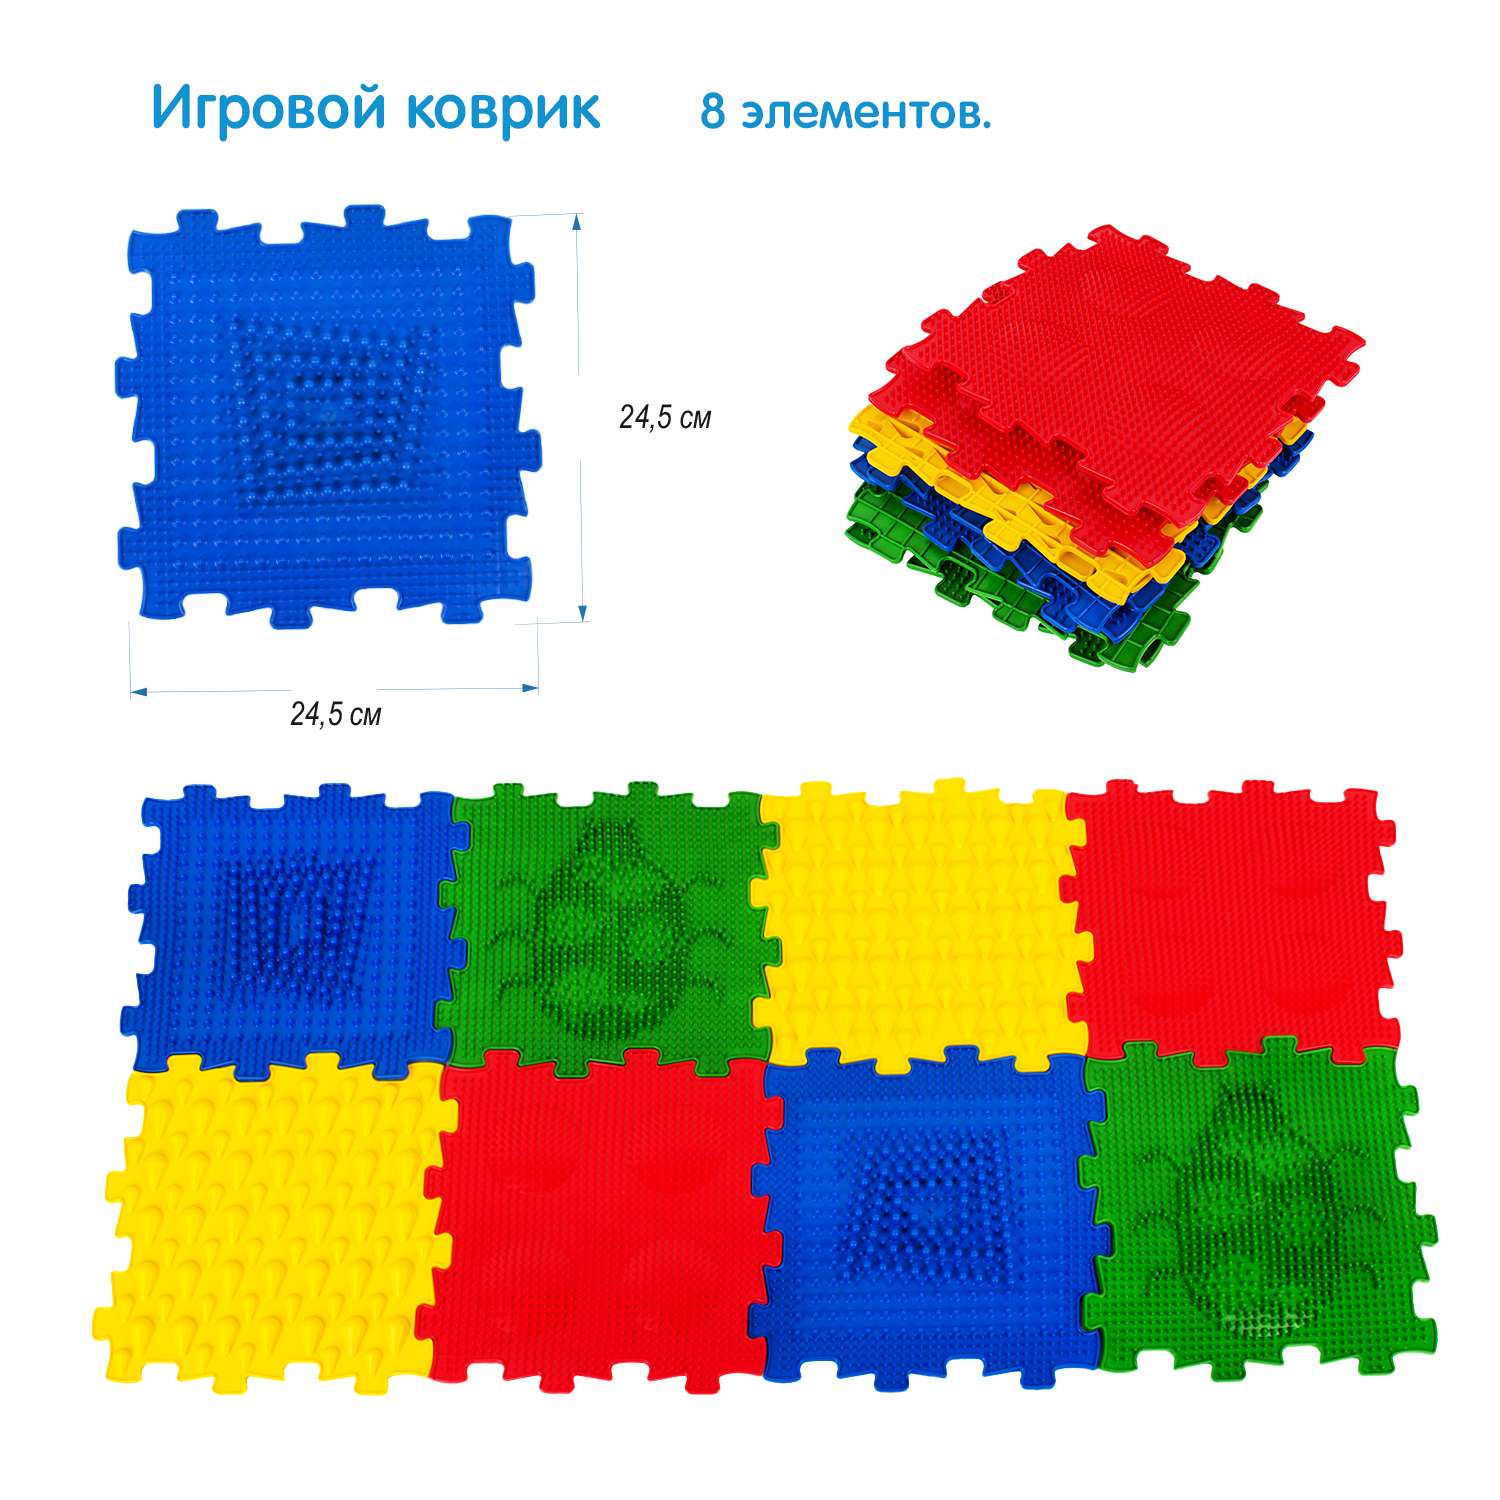 Игровой коврик СТРОМ модульный 8 элементов - фото 1